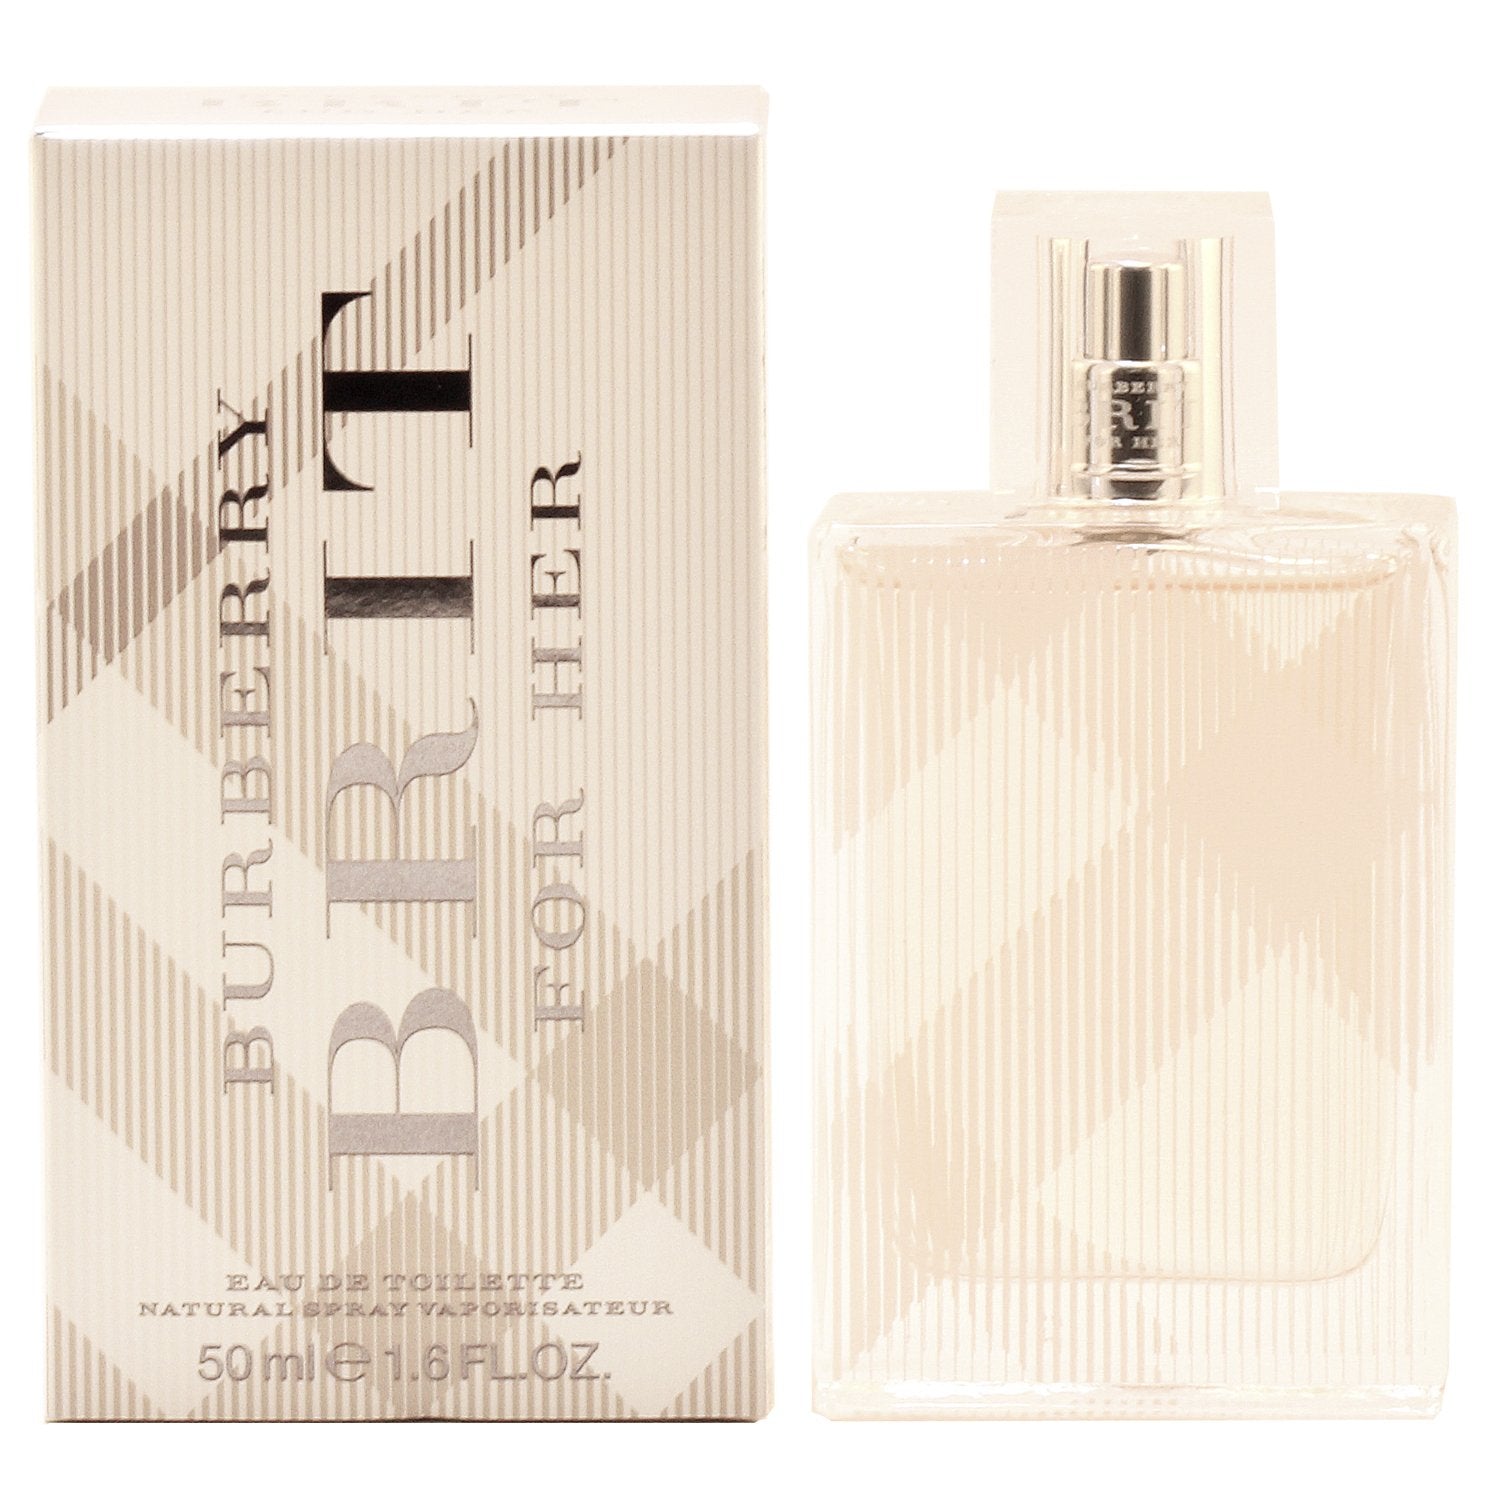 Perfume - BURBERRY BRIT FOR WOMEN - EAU DE TOILETTE SPRAY